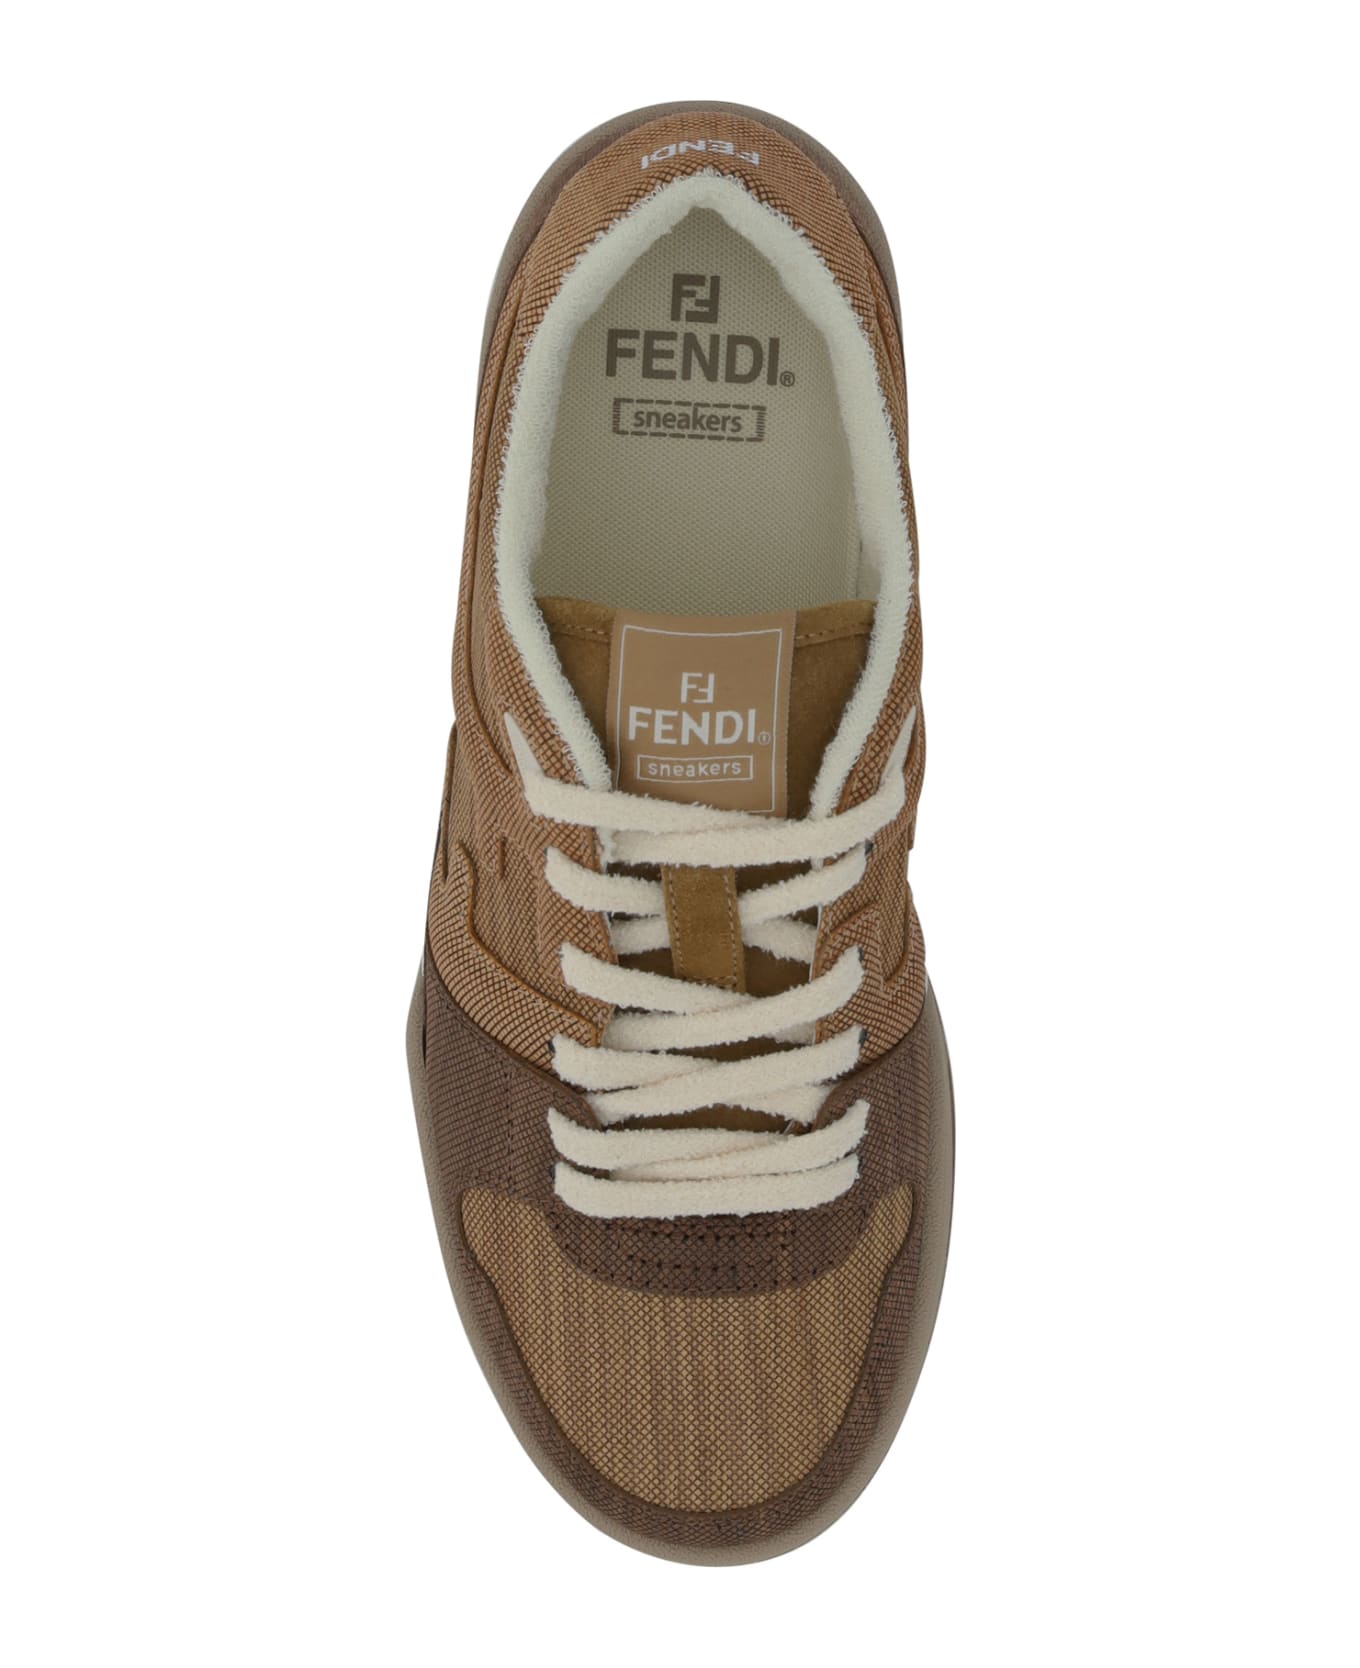 Fendi Match Sneakers - Noce+faggio+quercia スニーカー